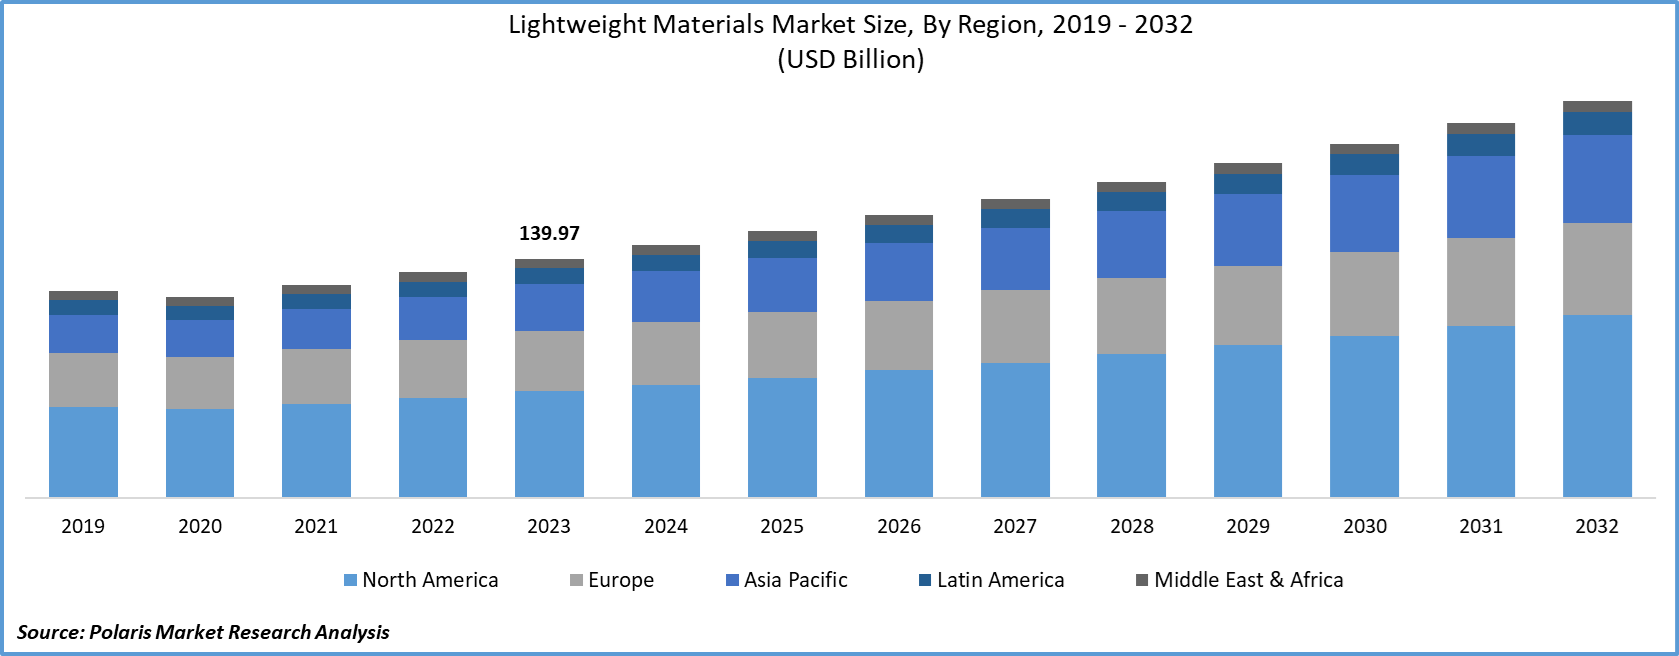 Lightweight Materials Market Size